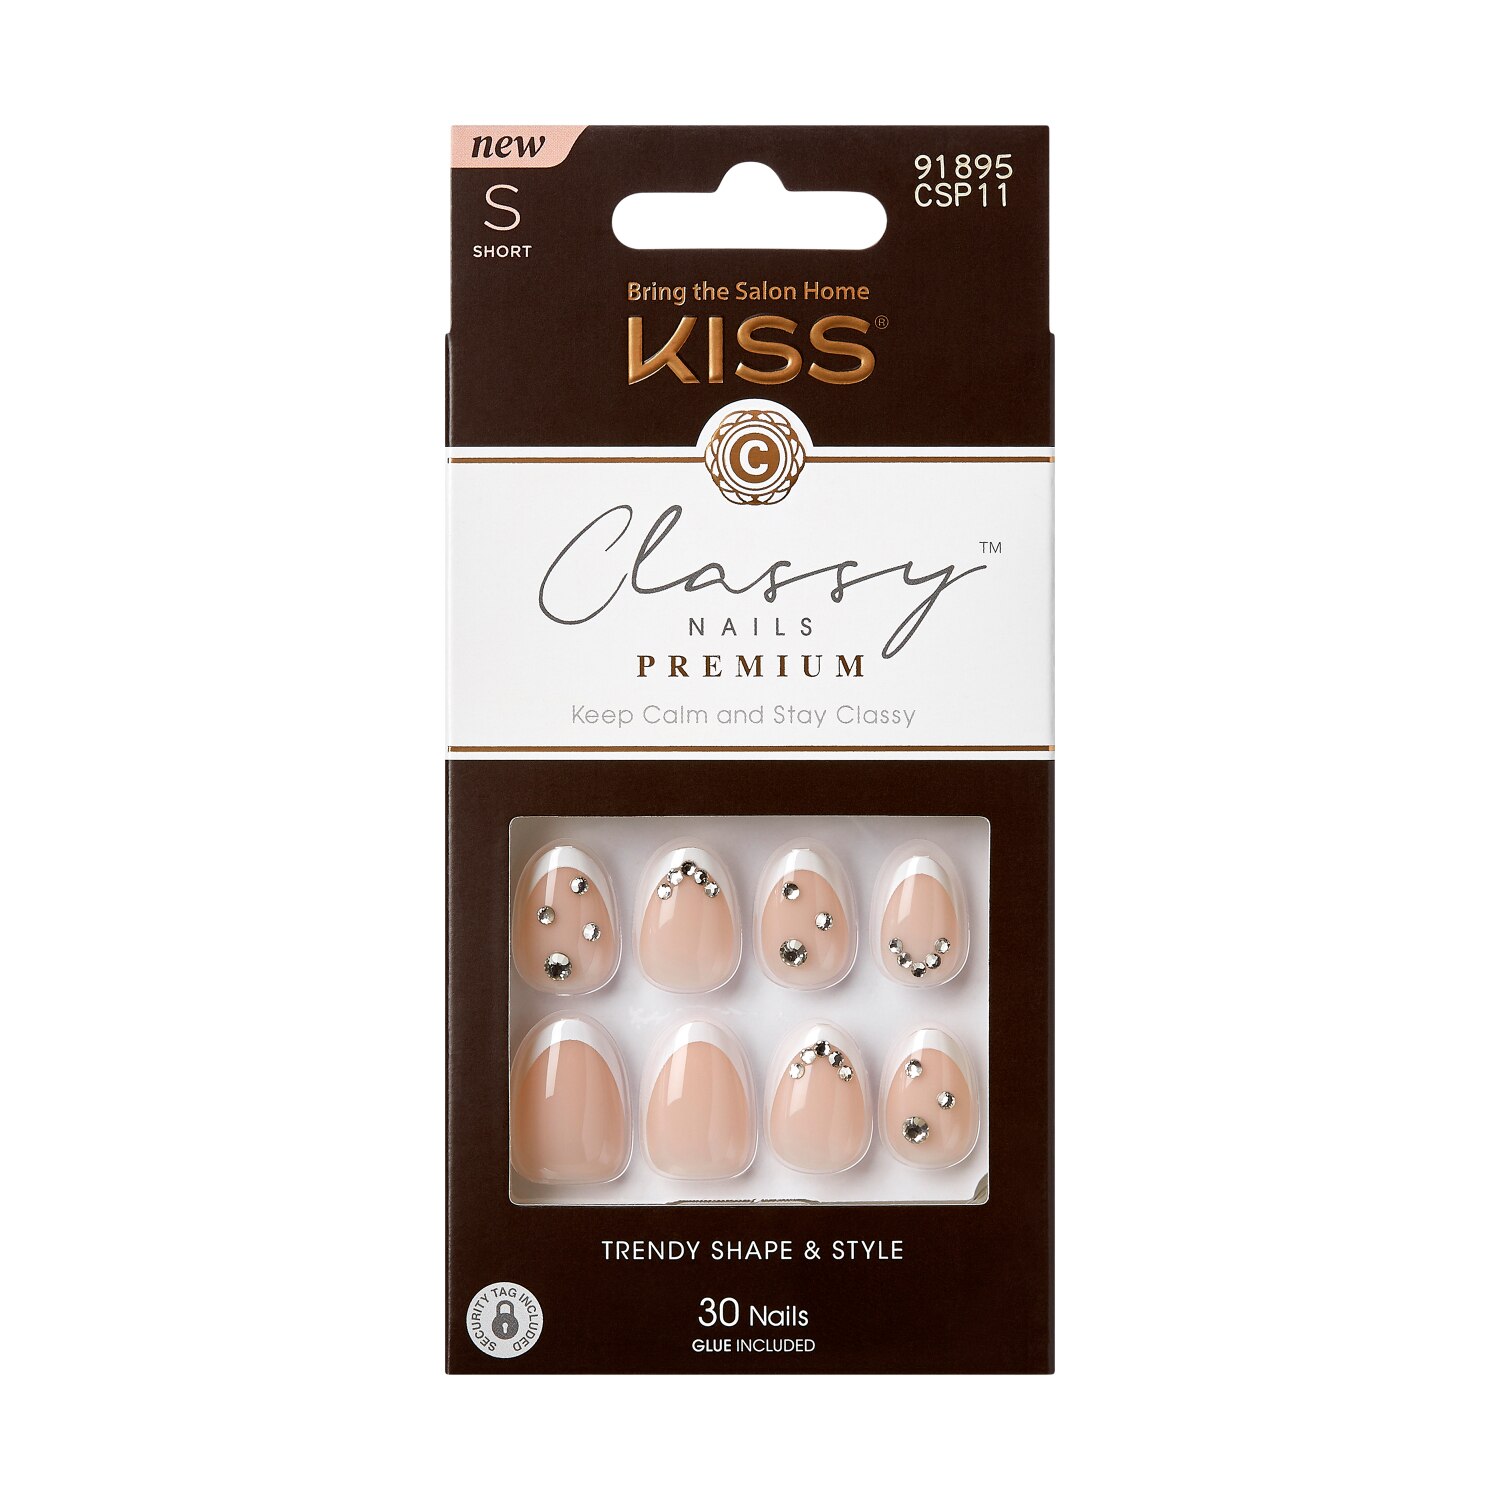 KISS Premium Classy False Nails, Prevailing , CVS